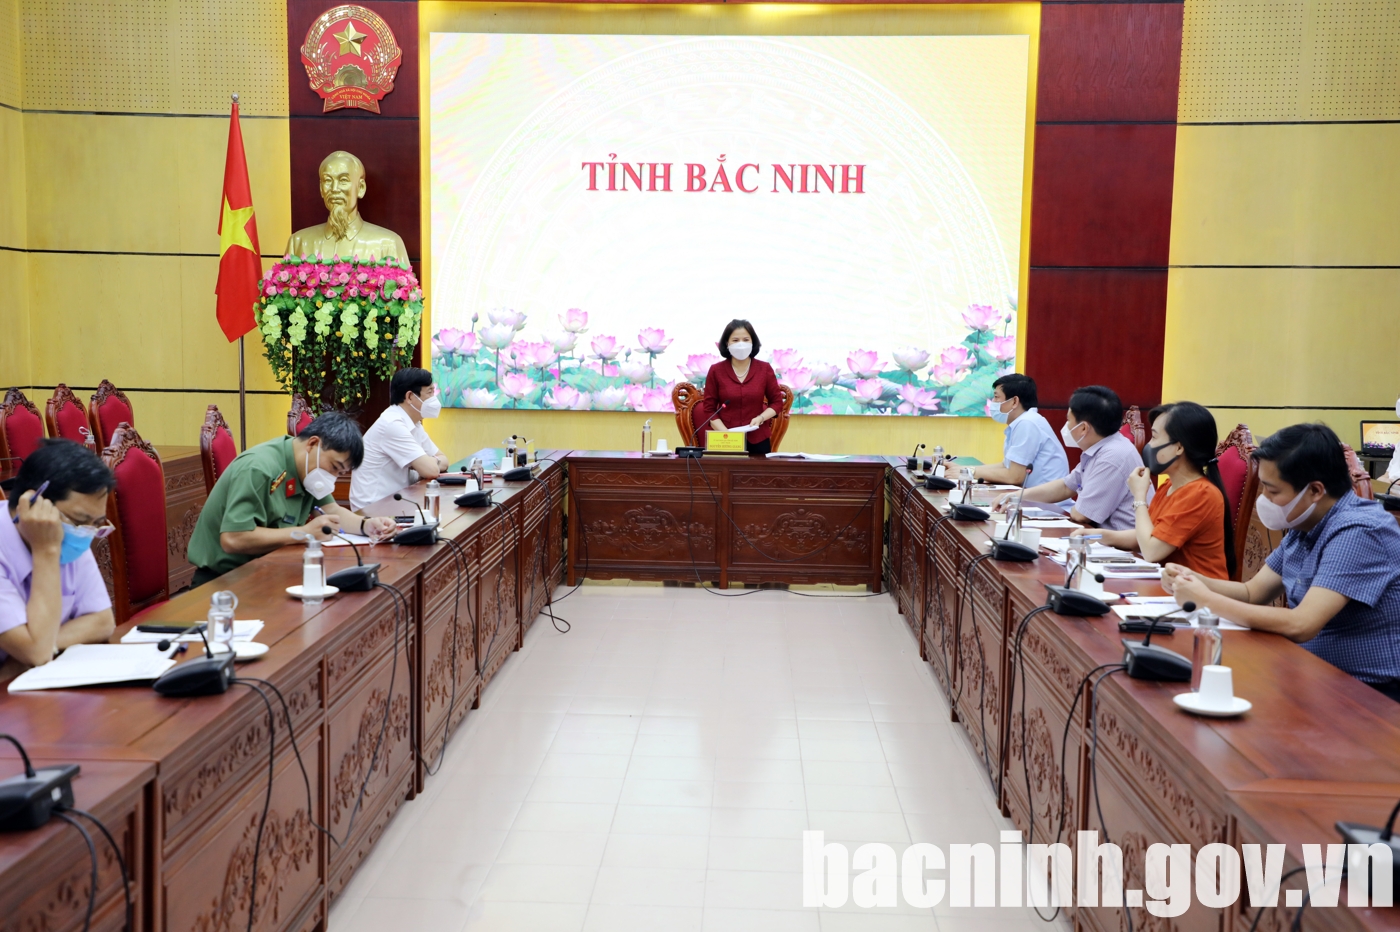 Phó thủ tướng họp trực tuyến với tỉnh Bắc Ninh về công tác phòng chống dịch Covid - 19